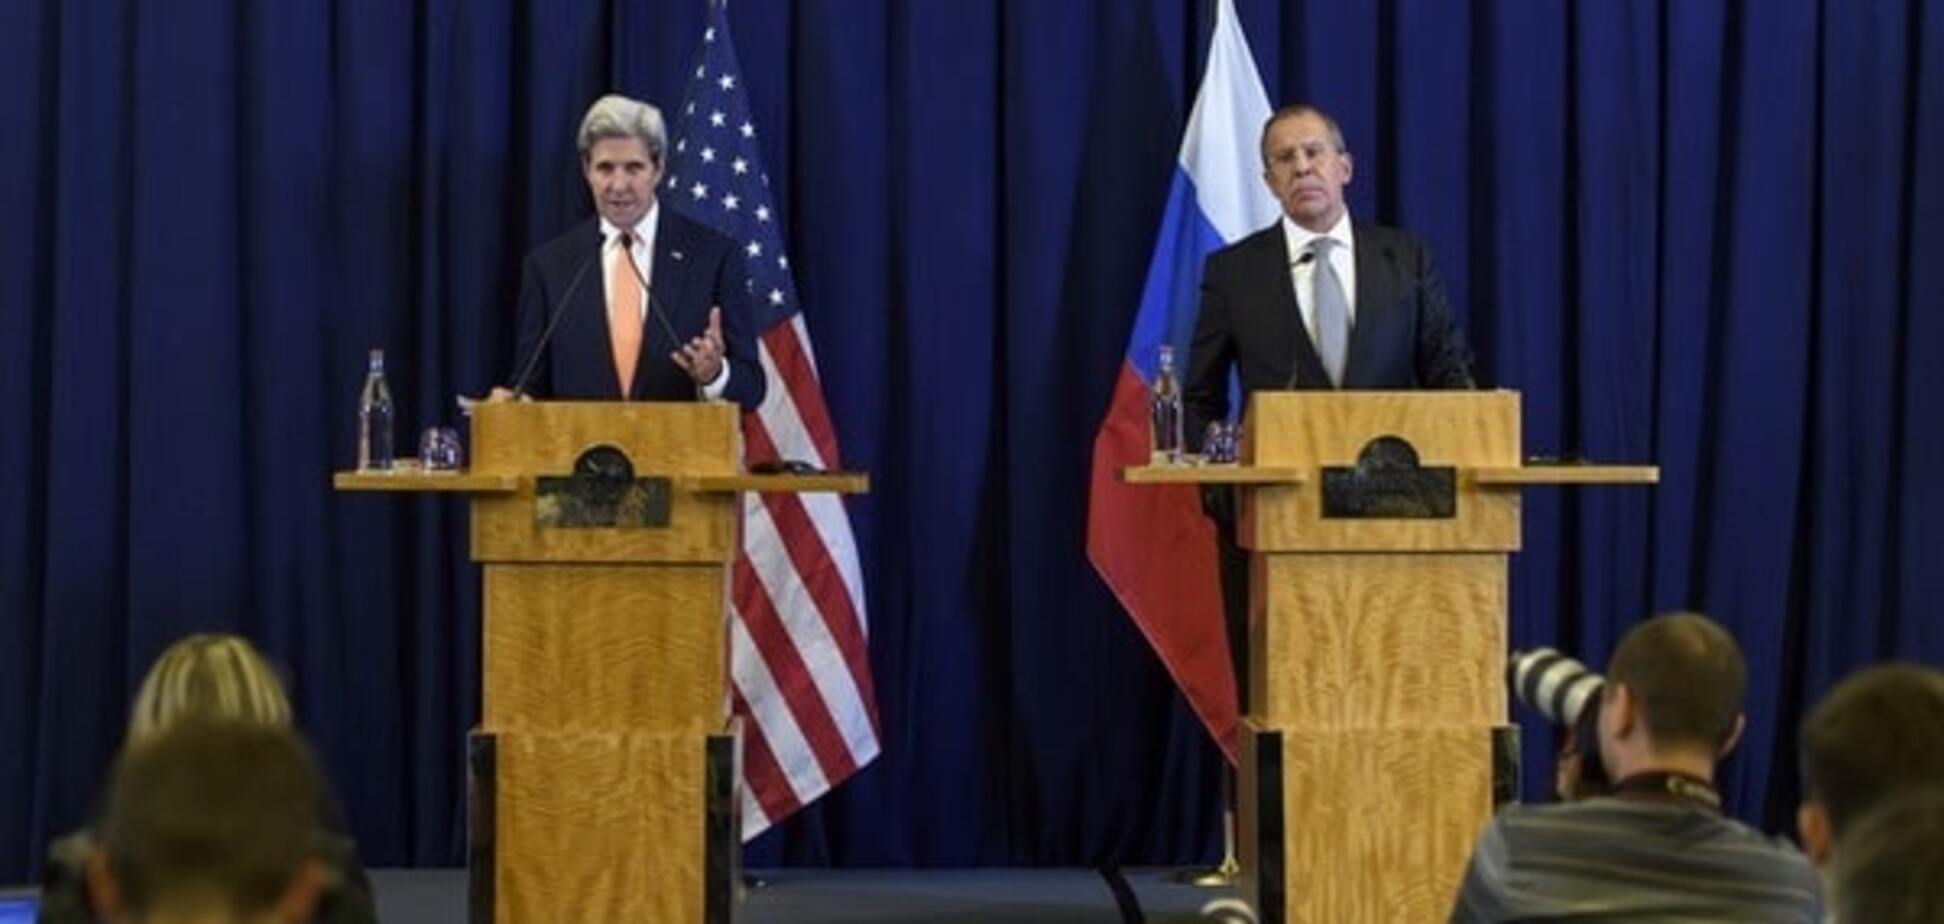 14 часов переговоров: США и Россия наконец подписали соглашение по Сирии